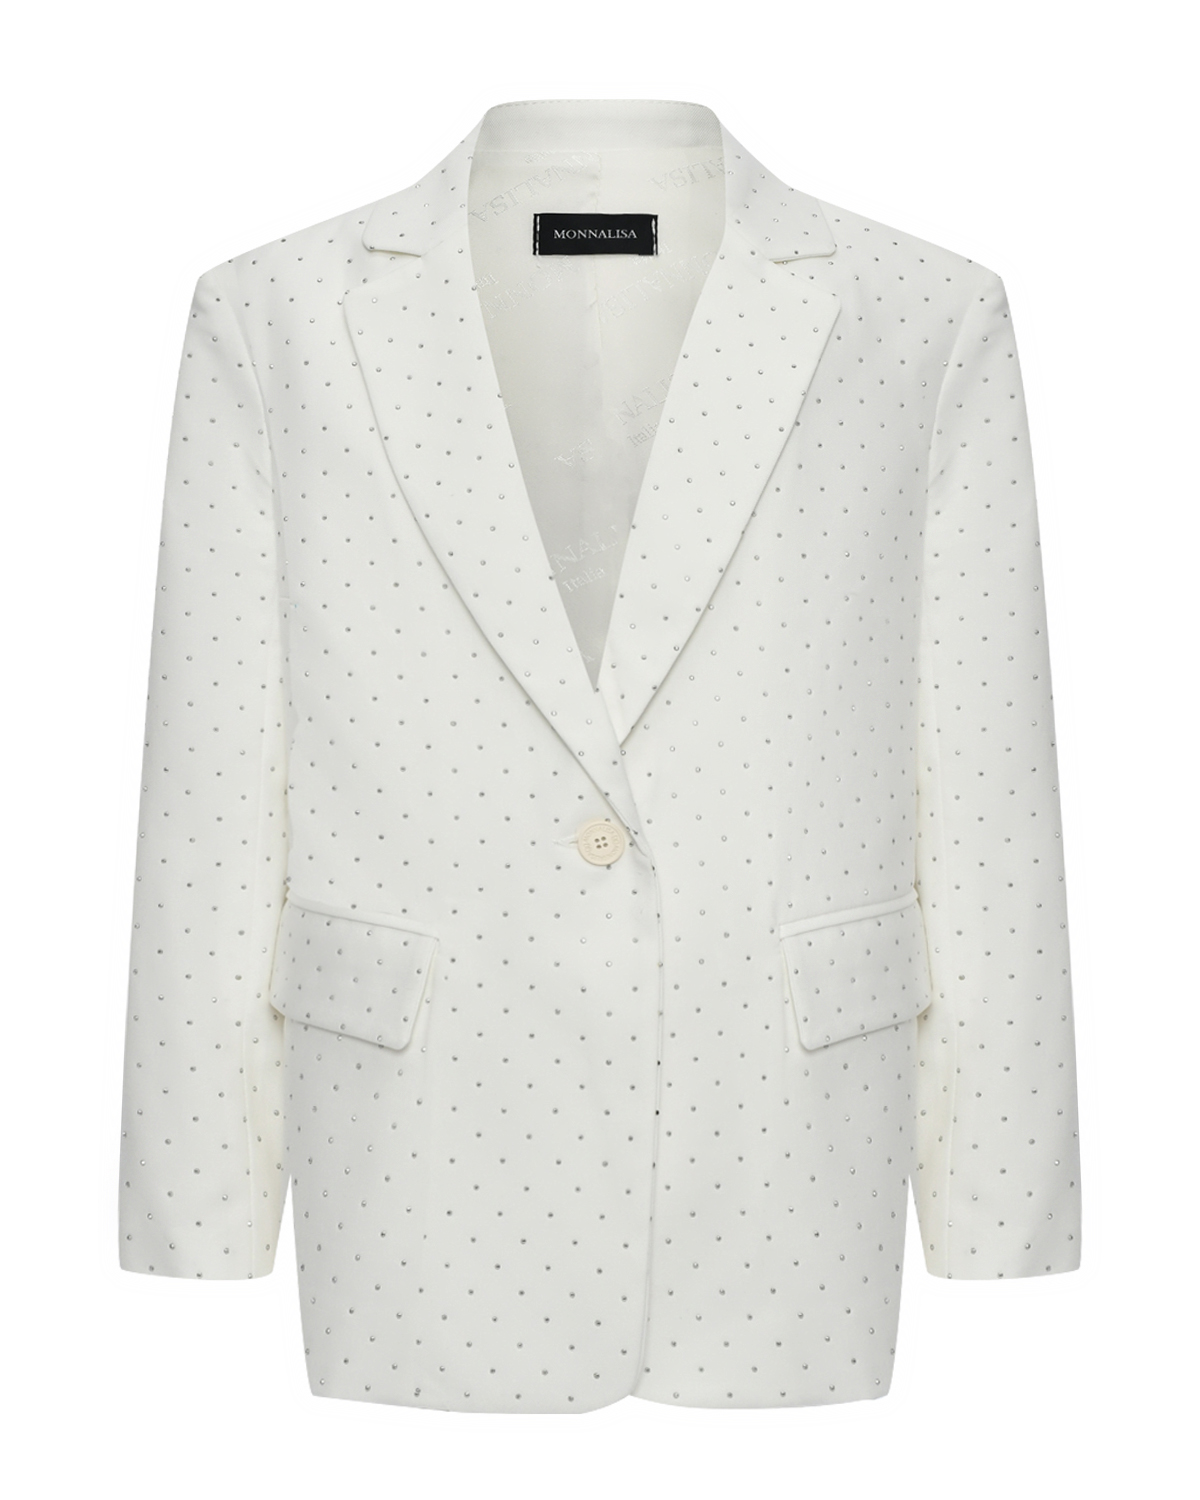 Пиджак однобортный белый со стразами Monnalisa, размер 140, цвет нет цвета - фото 1